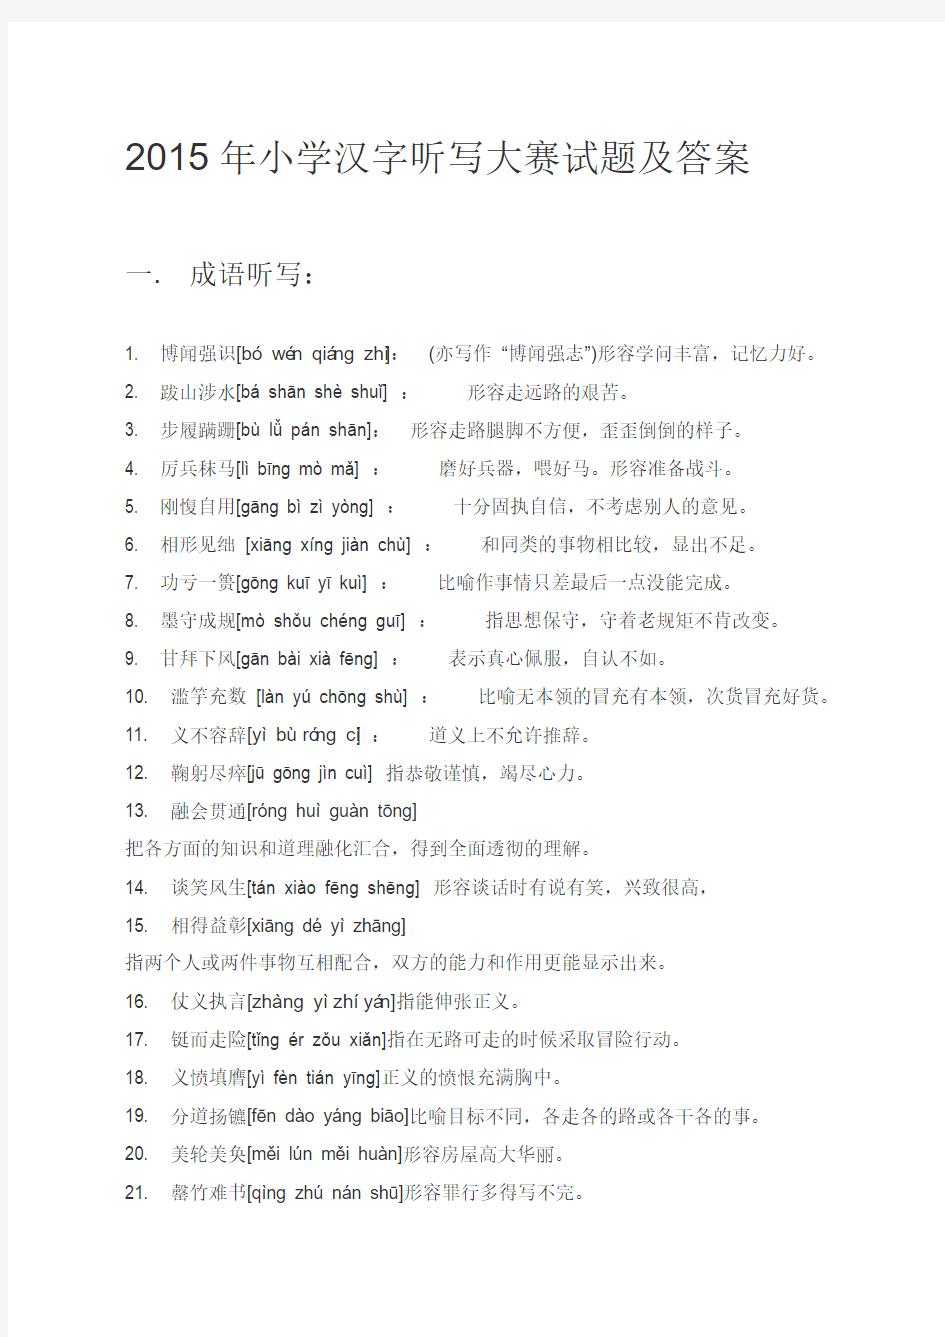 2015年小学生汉字听写大赛词语集锦(成语、词语-两类)